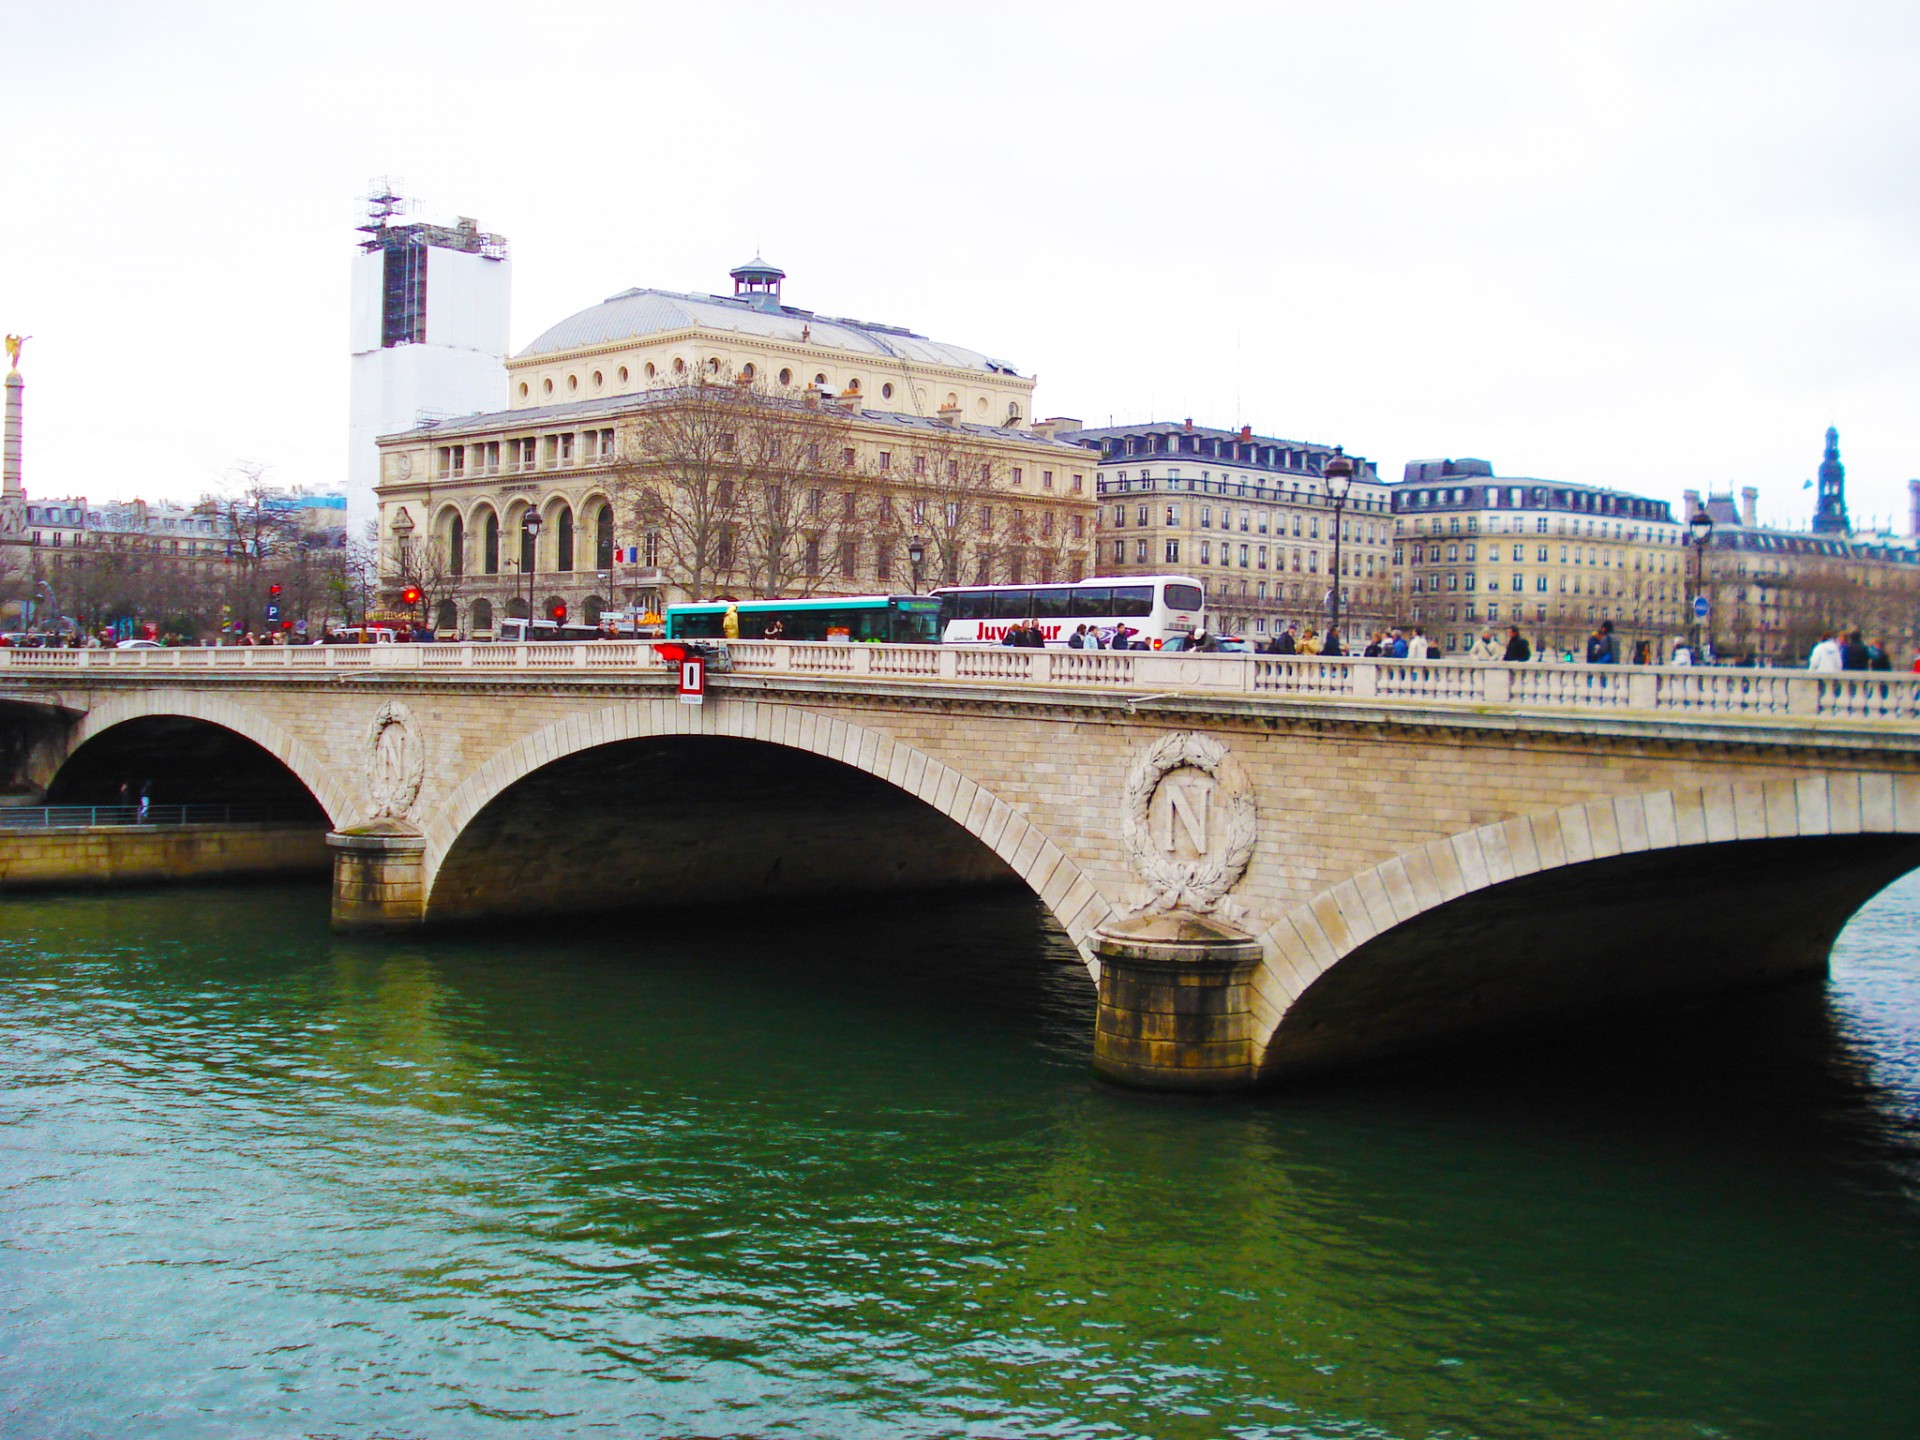 Arches de France - The River